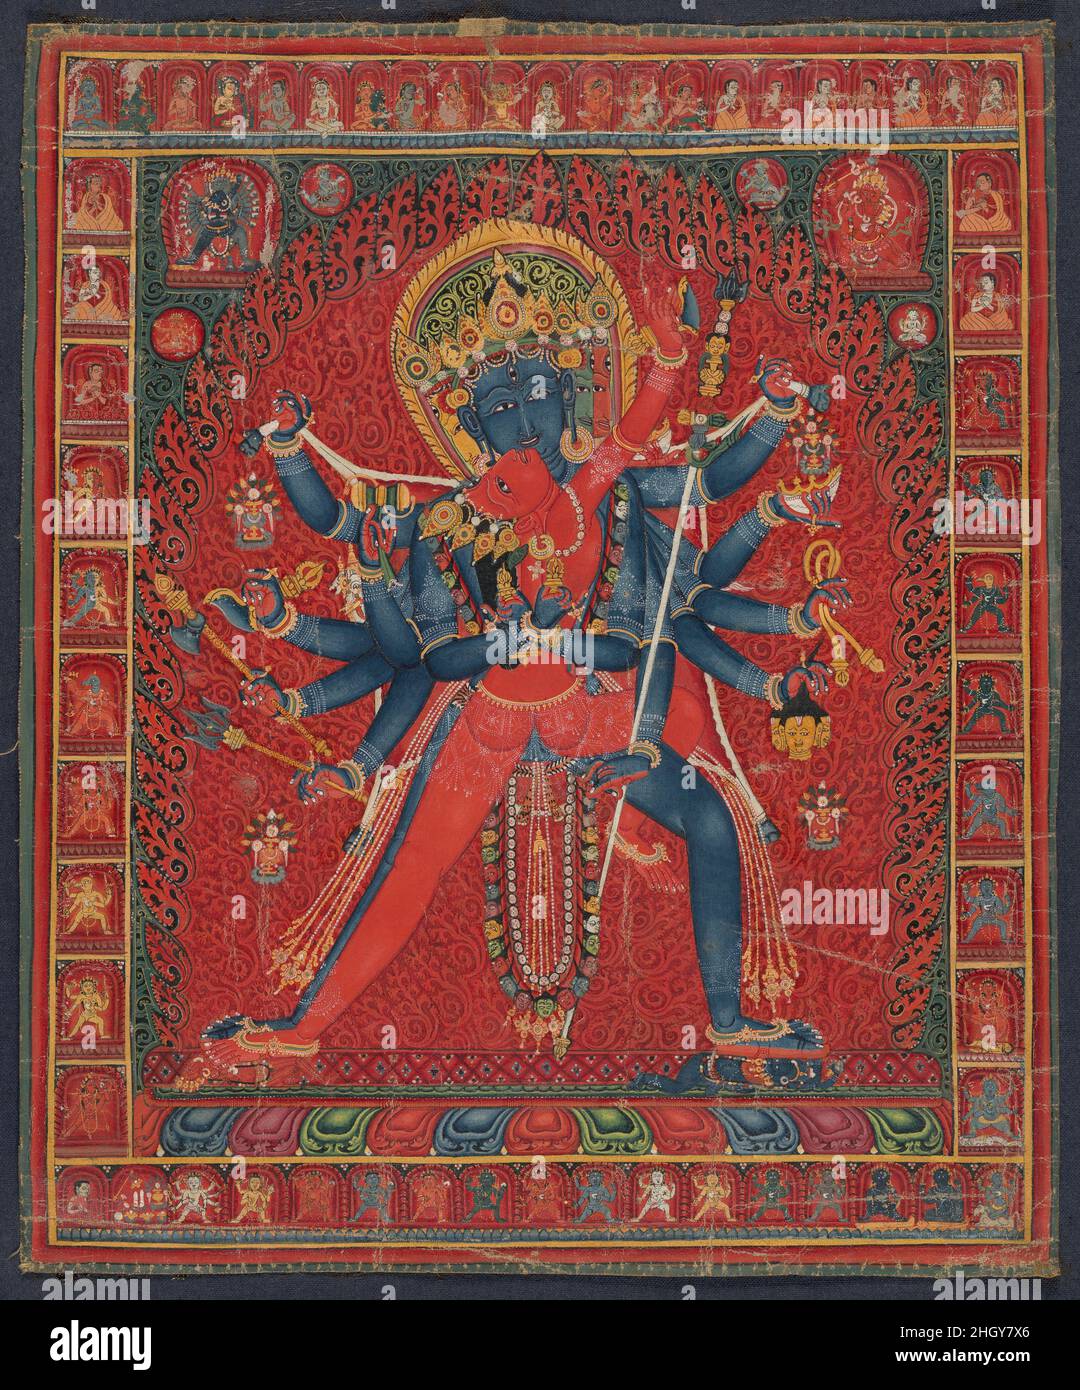 Chakrasamvara e consort Vajravarahi 1450–1500 Tibet centrale questa potente rappresentazione di Chakrasamvara che abbraccia la sua consorte yoga Vajravarahi è una visualizzazione molto energica, come sarebbe stata sperimentata da un maestro tantrico avanzato. Queste sono divinità chiave nel sistema Vajrayana, che uniscono due delle idee più potenti nel buddismo esoterico, la saggezza, incarnata in Vajravarahi, e la compassione, l'essenza di Chakrasamvara. Il suo nome, che si traduce come cerchio di Bliss, incarna la potente Unione di questi due principi fondamentali del buddismo. Si tratta probabilmente di una delle più belle raffiguranti Foto Stock